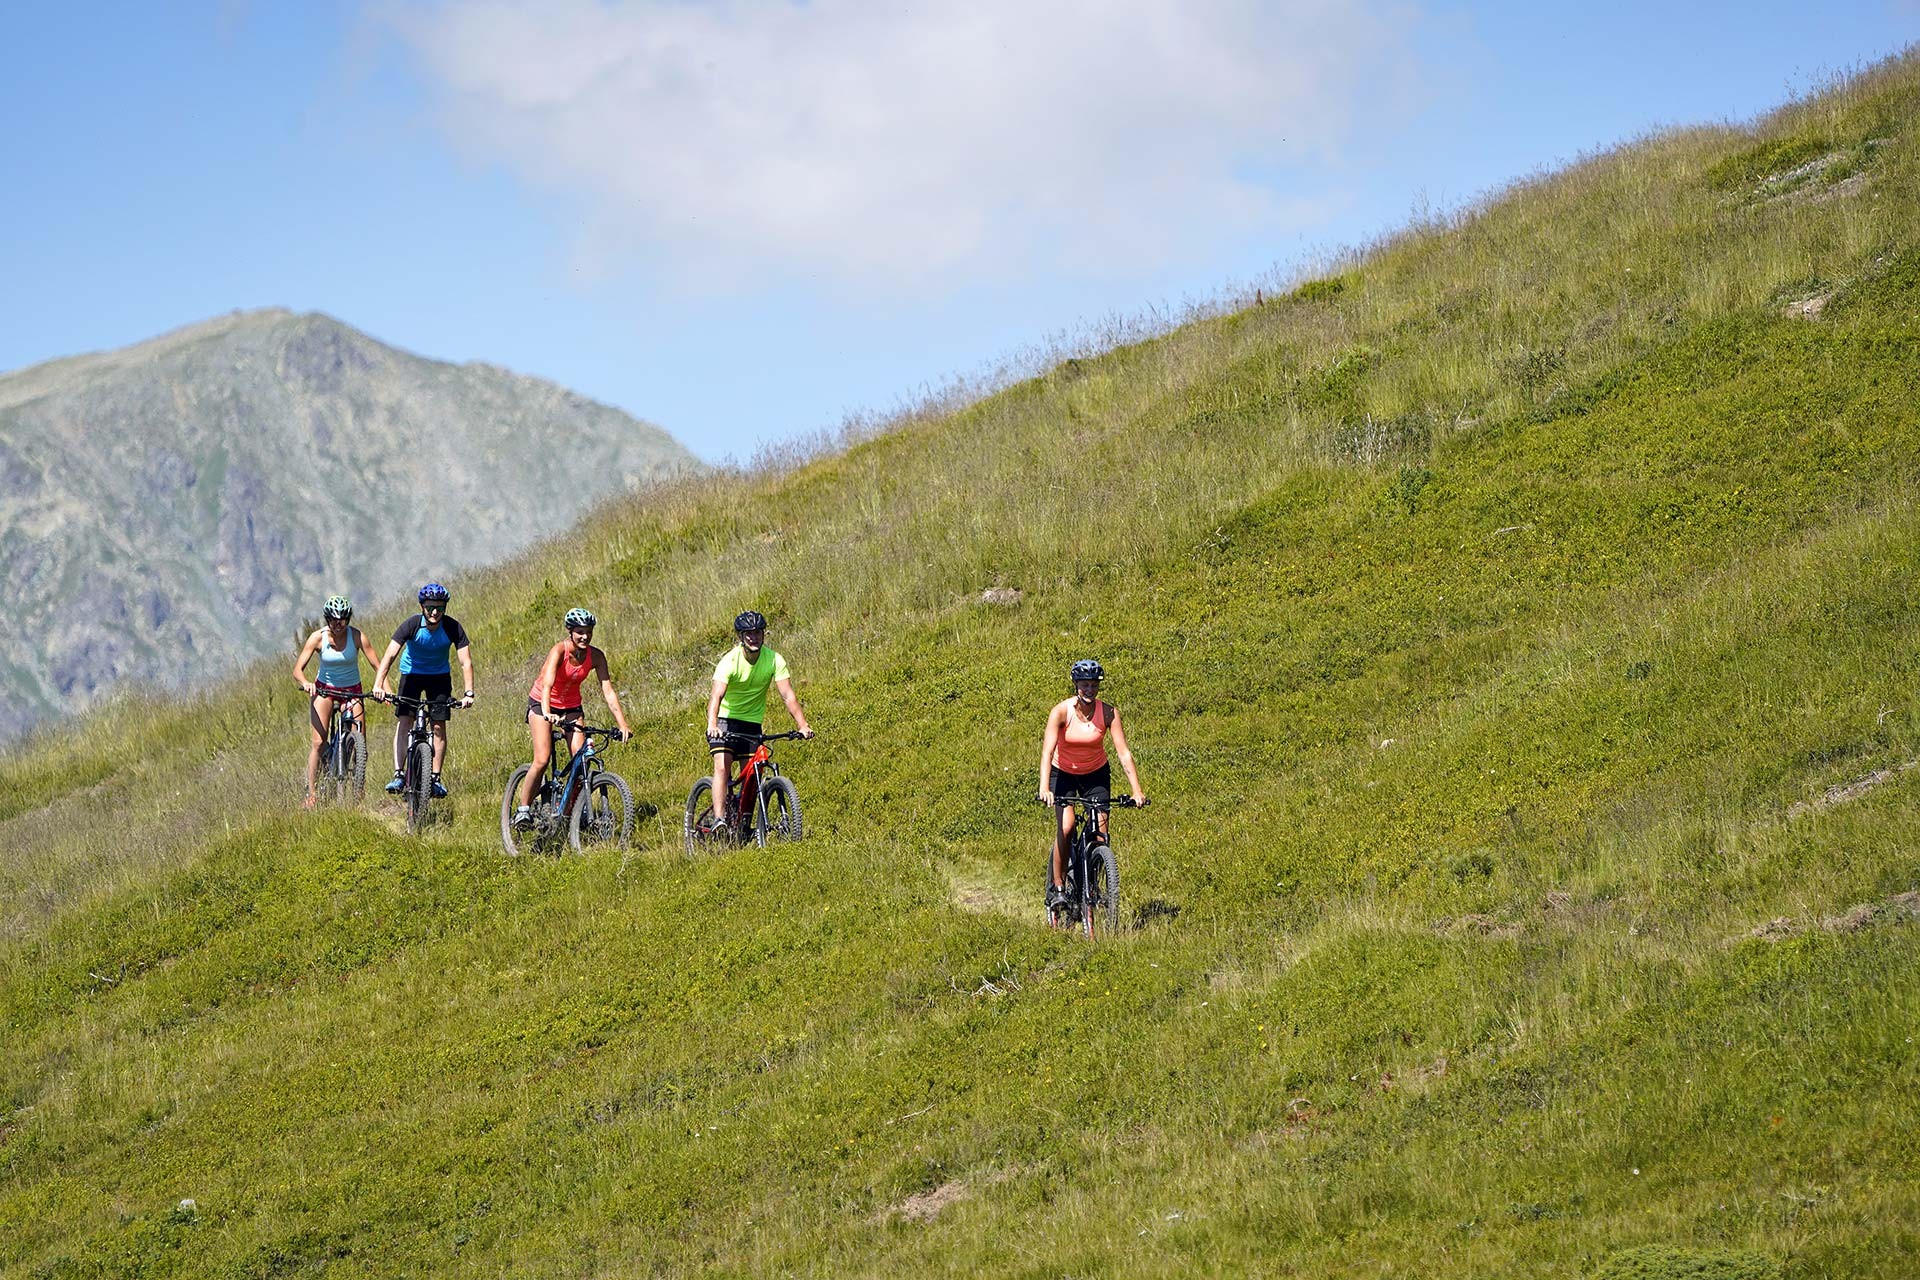 Chamrousse vélo tout terrain sentier VTT montagne électrique VTTAE station grenoble isère alpes france